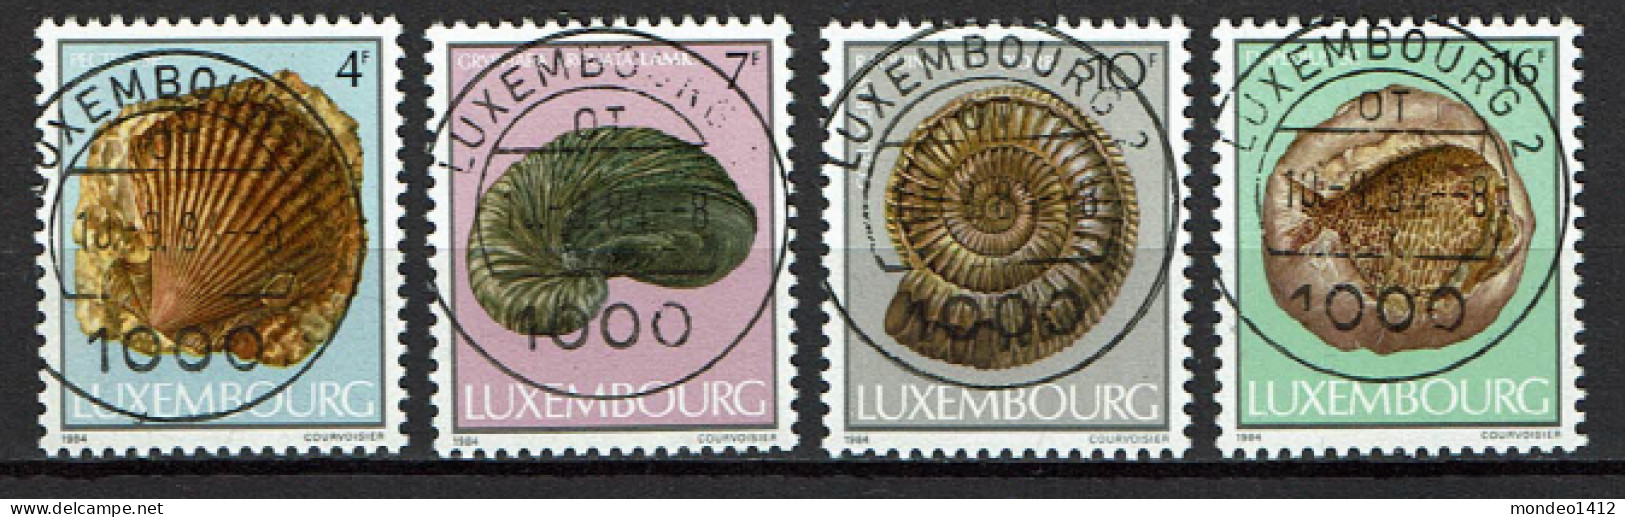 Luxembourg 1984 - YT 1057/1060 - Fossils, Fossielen, Fossiles - Oblitérés